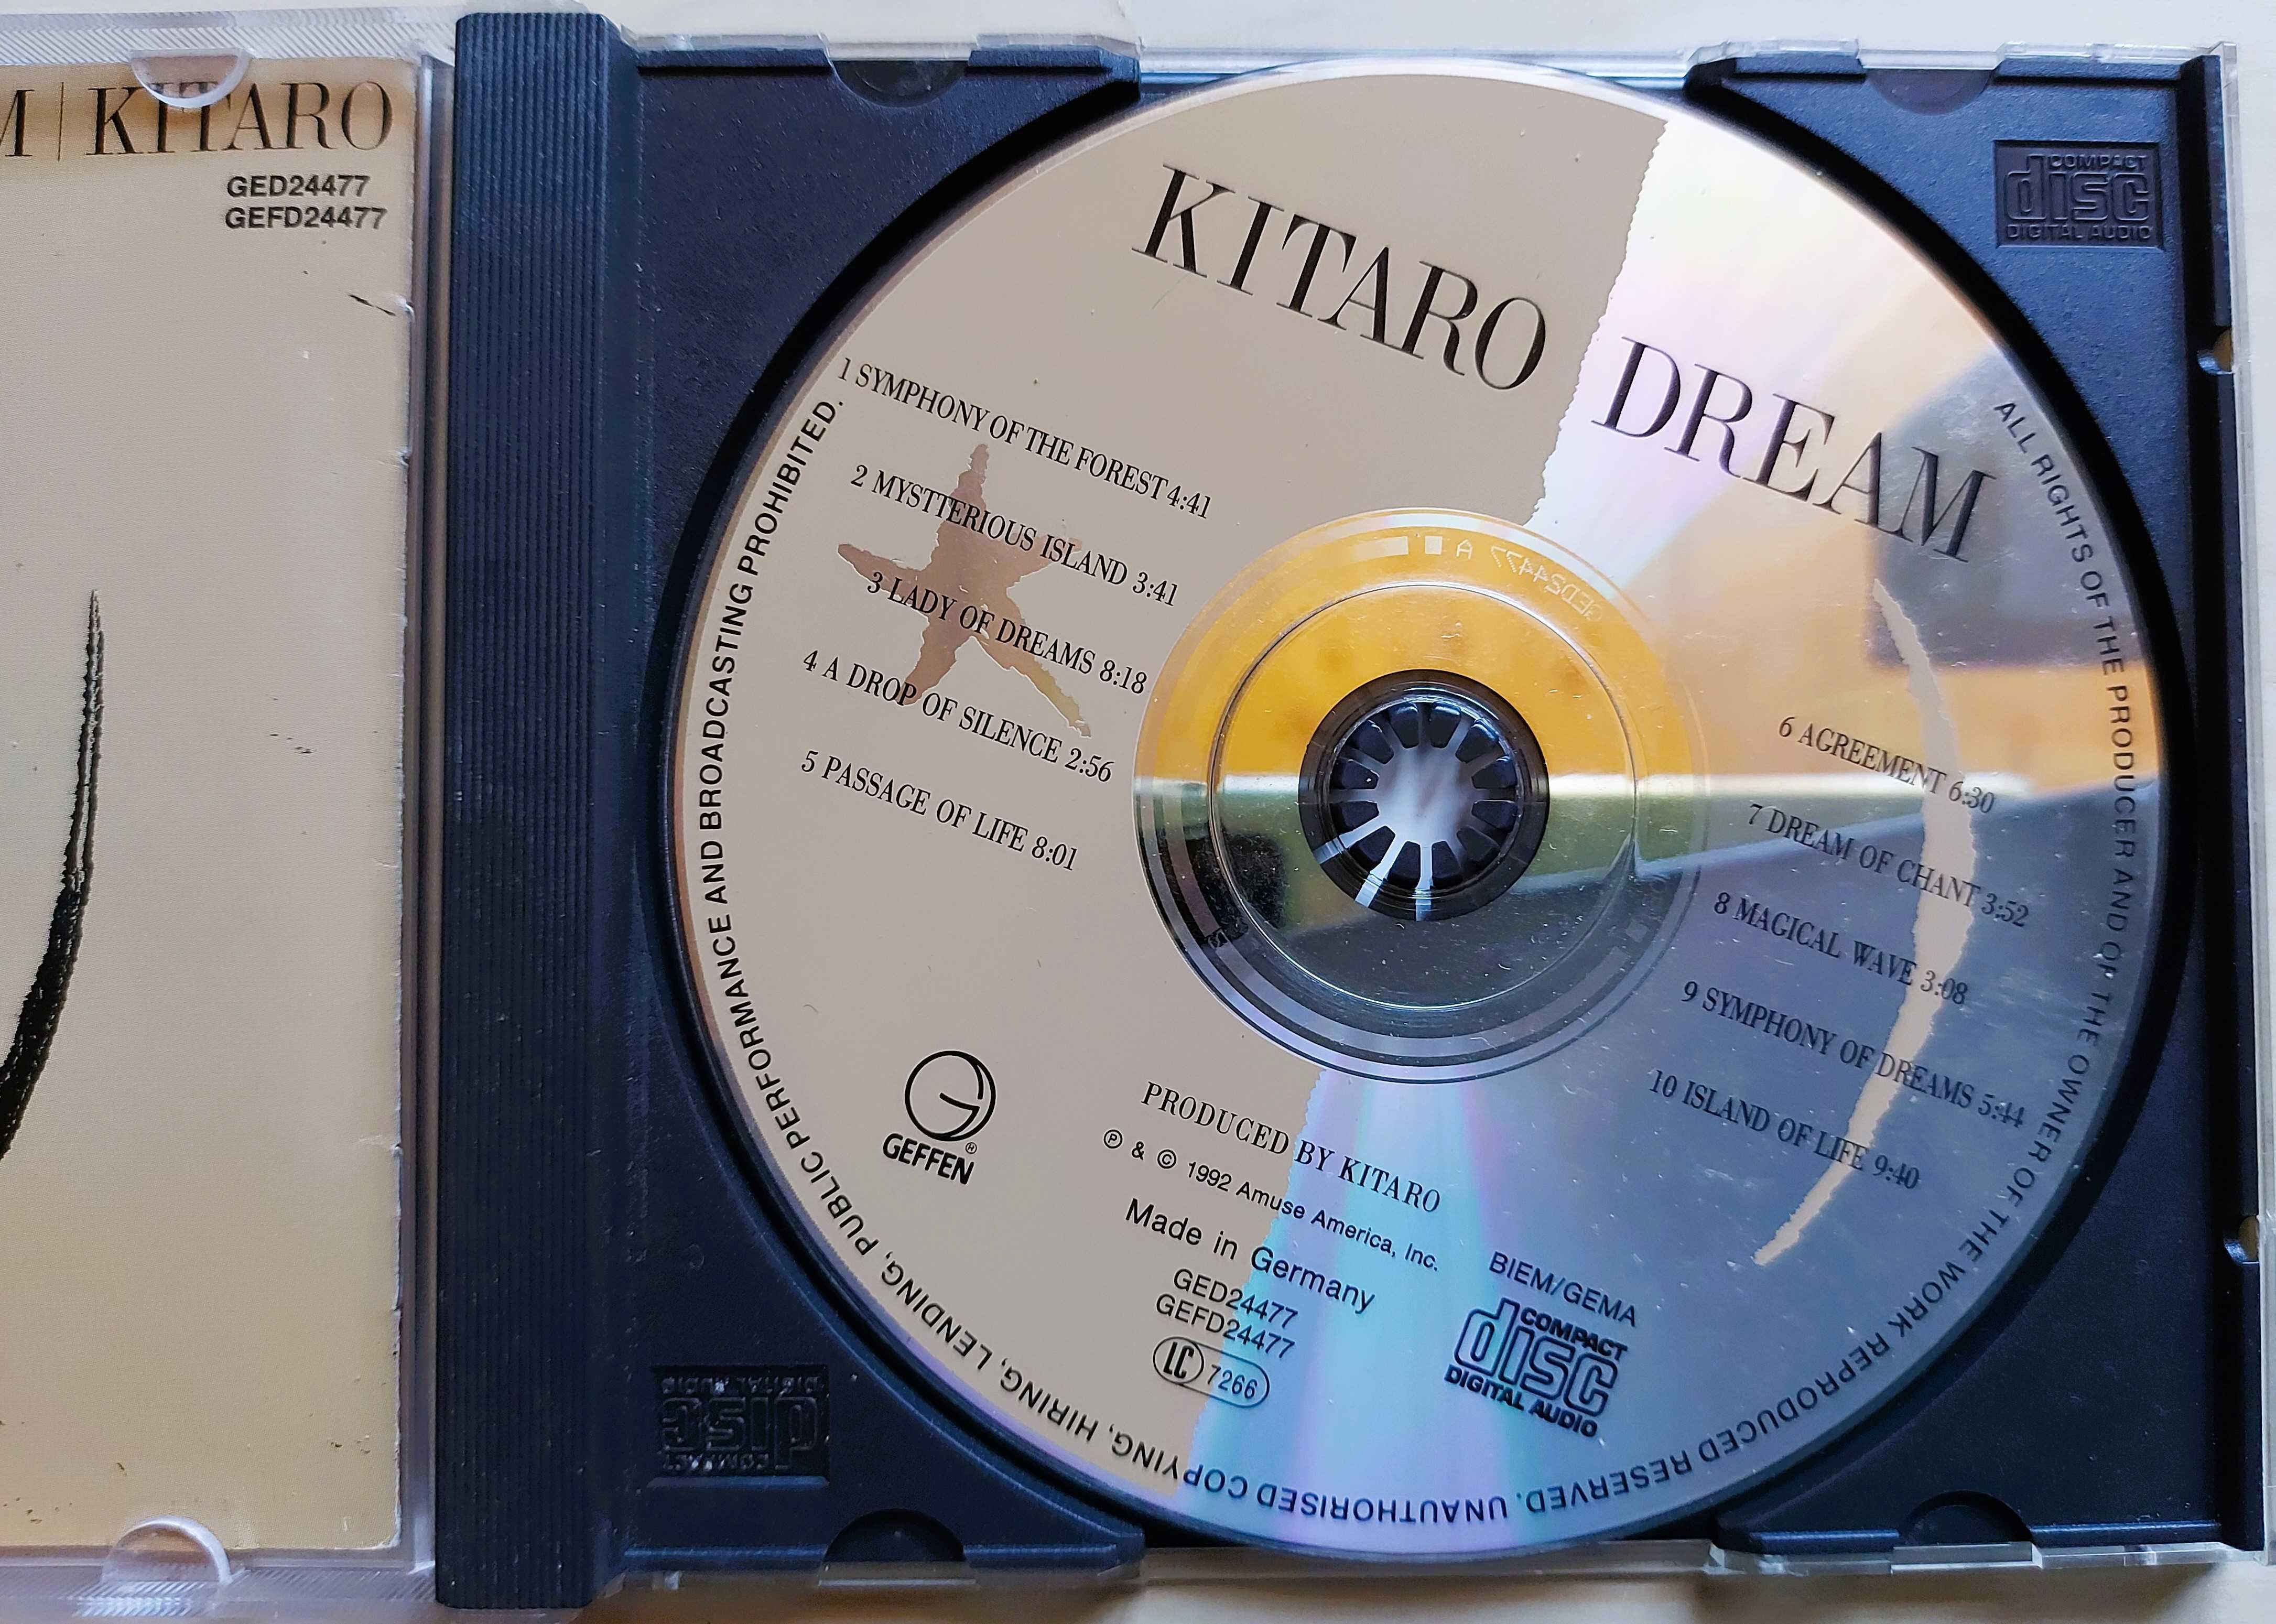 CD  Kitaro Dream oryginał Germany - tanio!